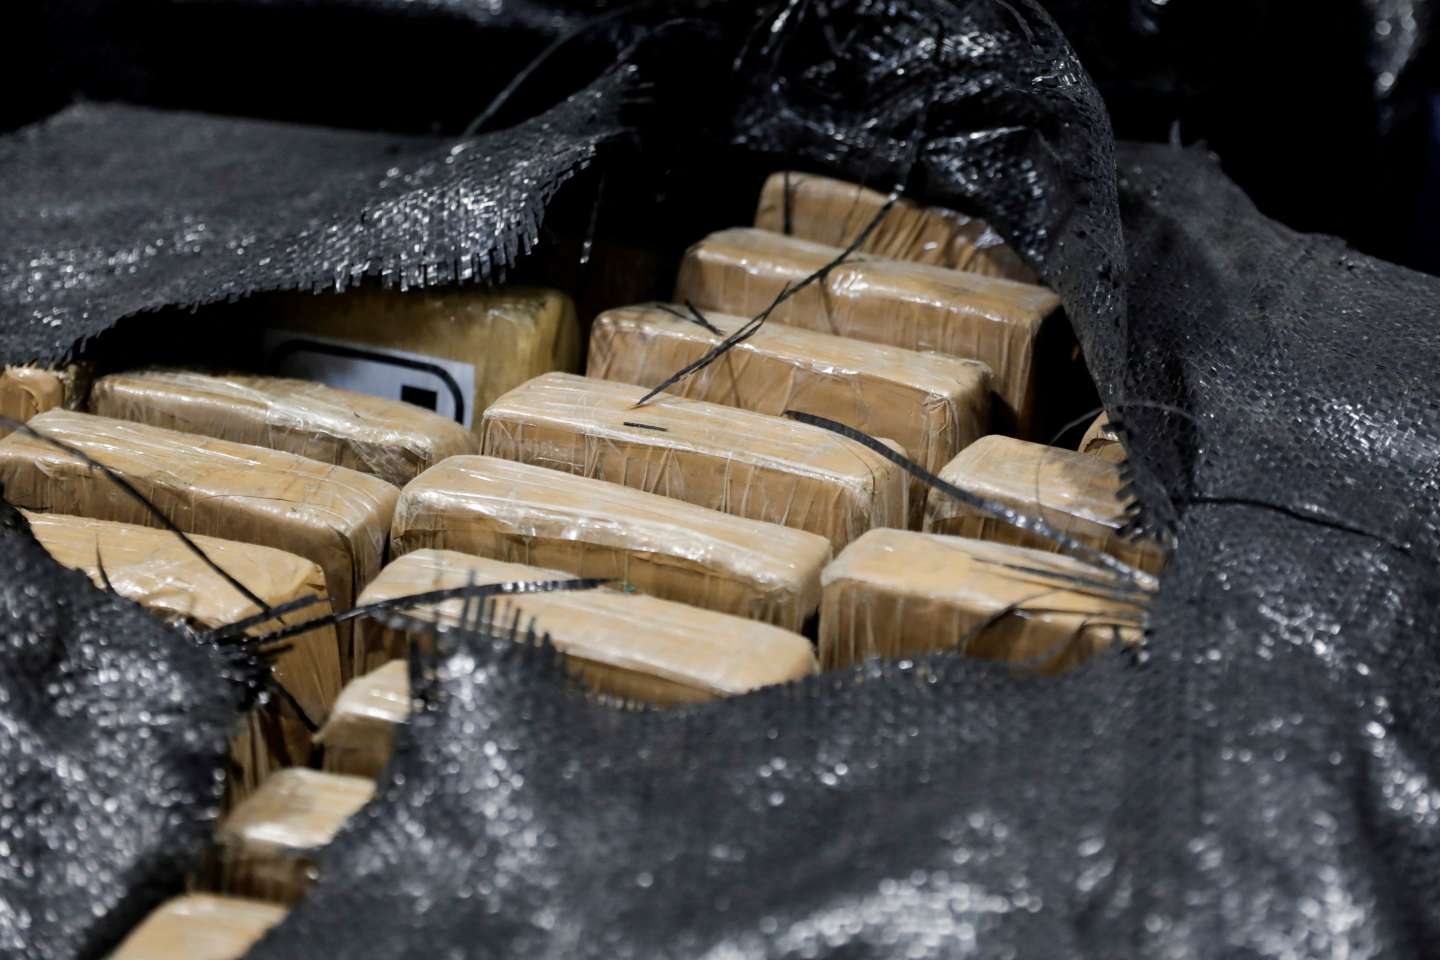 Plus de 2 tonnes de cocaïne retrouvées échouées sur le littoral de la Manche depuis dimanche